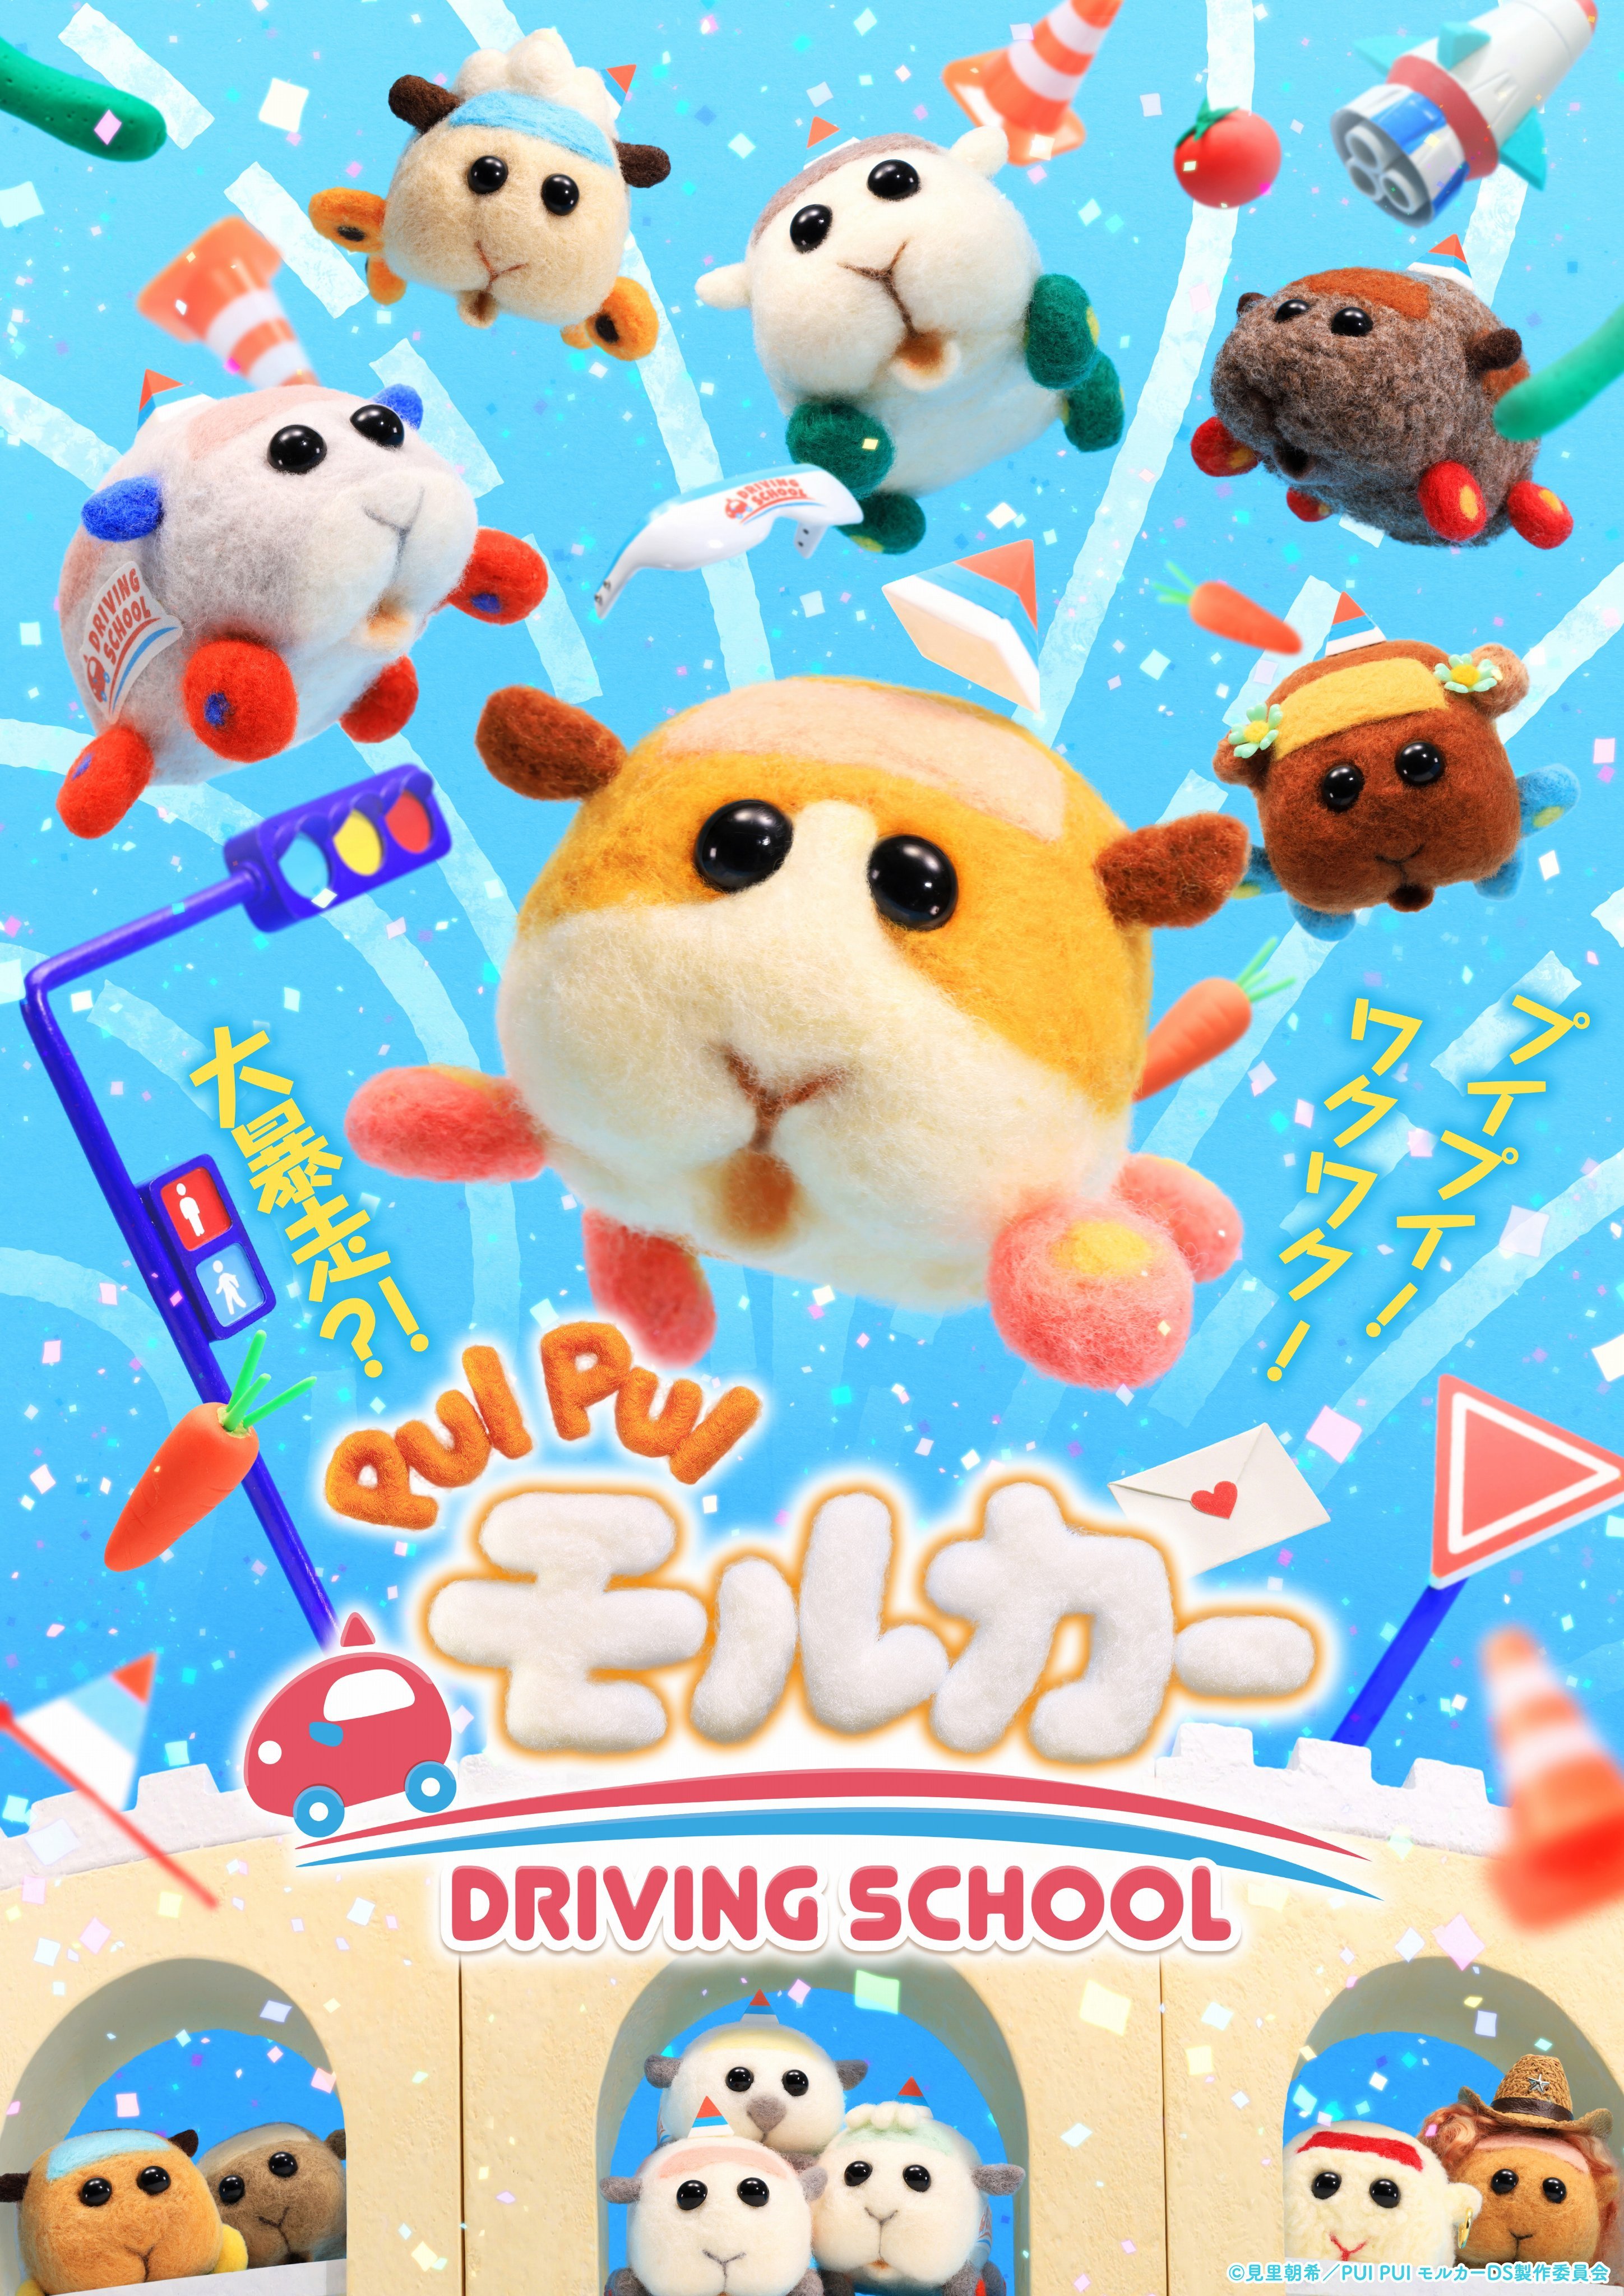 《天竺鼠车车-驾校》第二季PV公布 十月播出插图